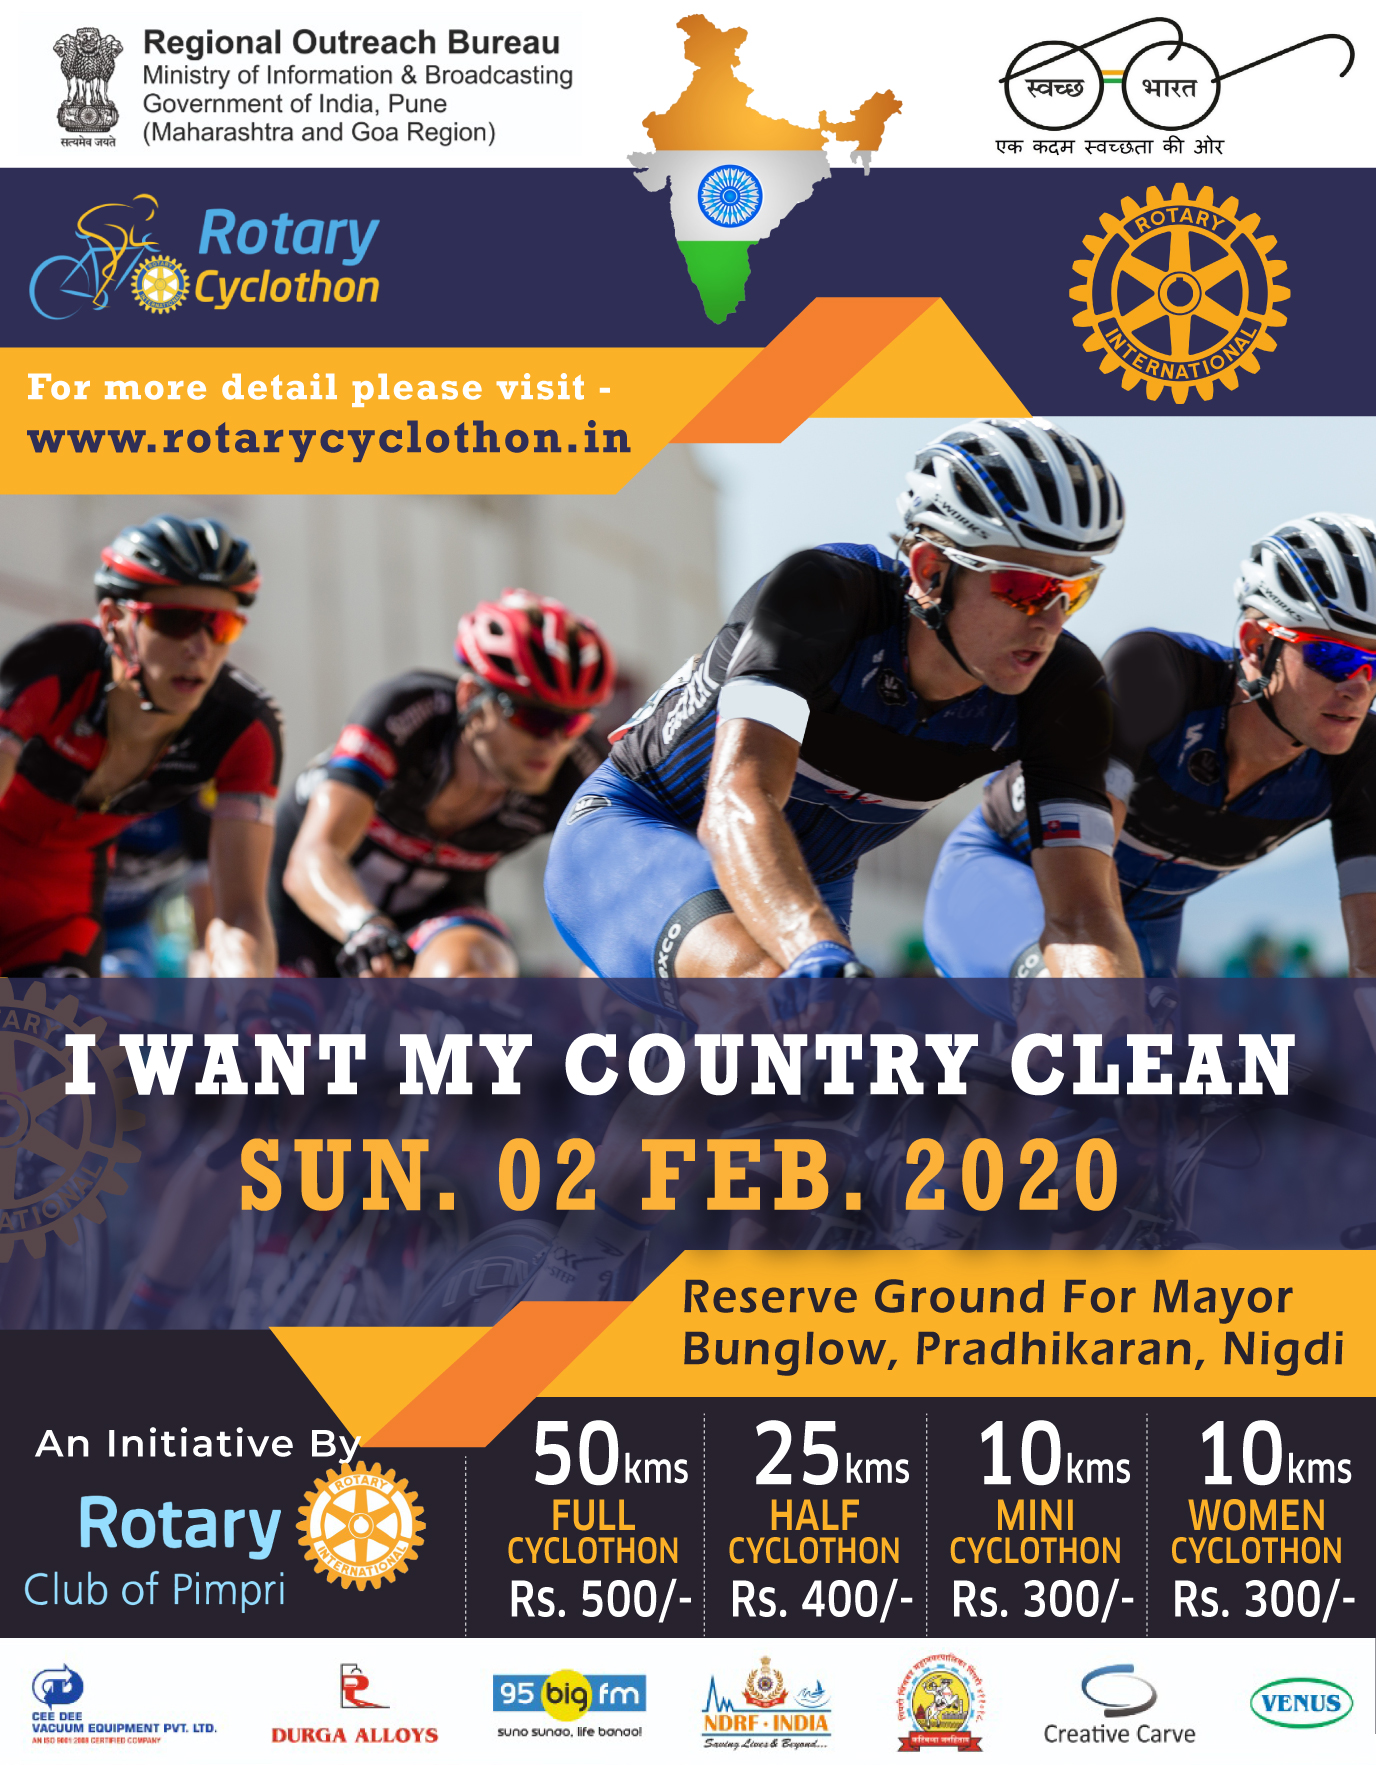 Rotary Cyclothon, Pune, Maharashtra, India